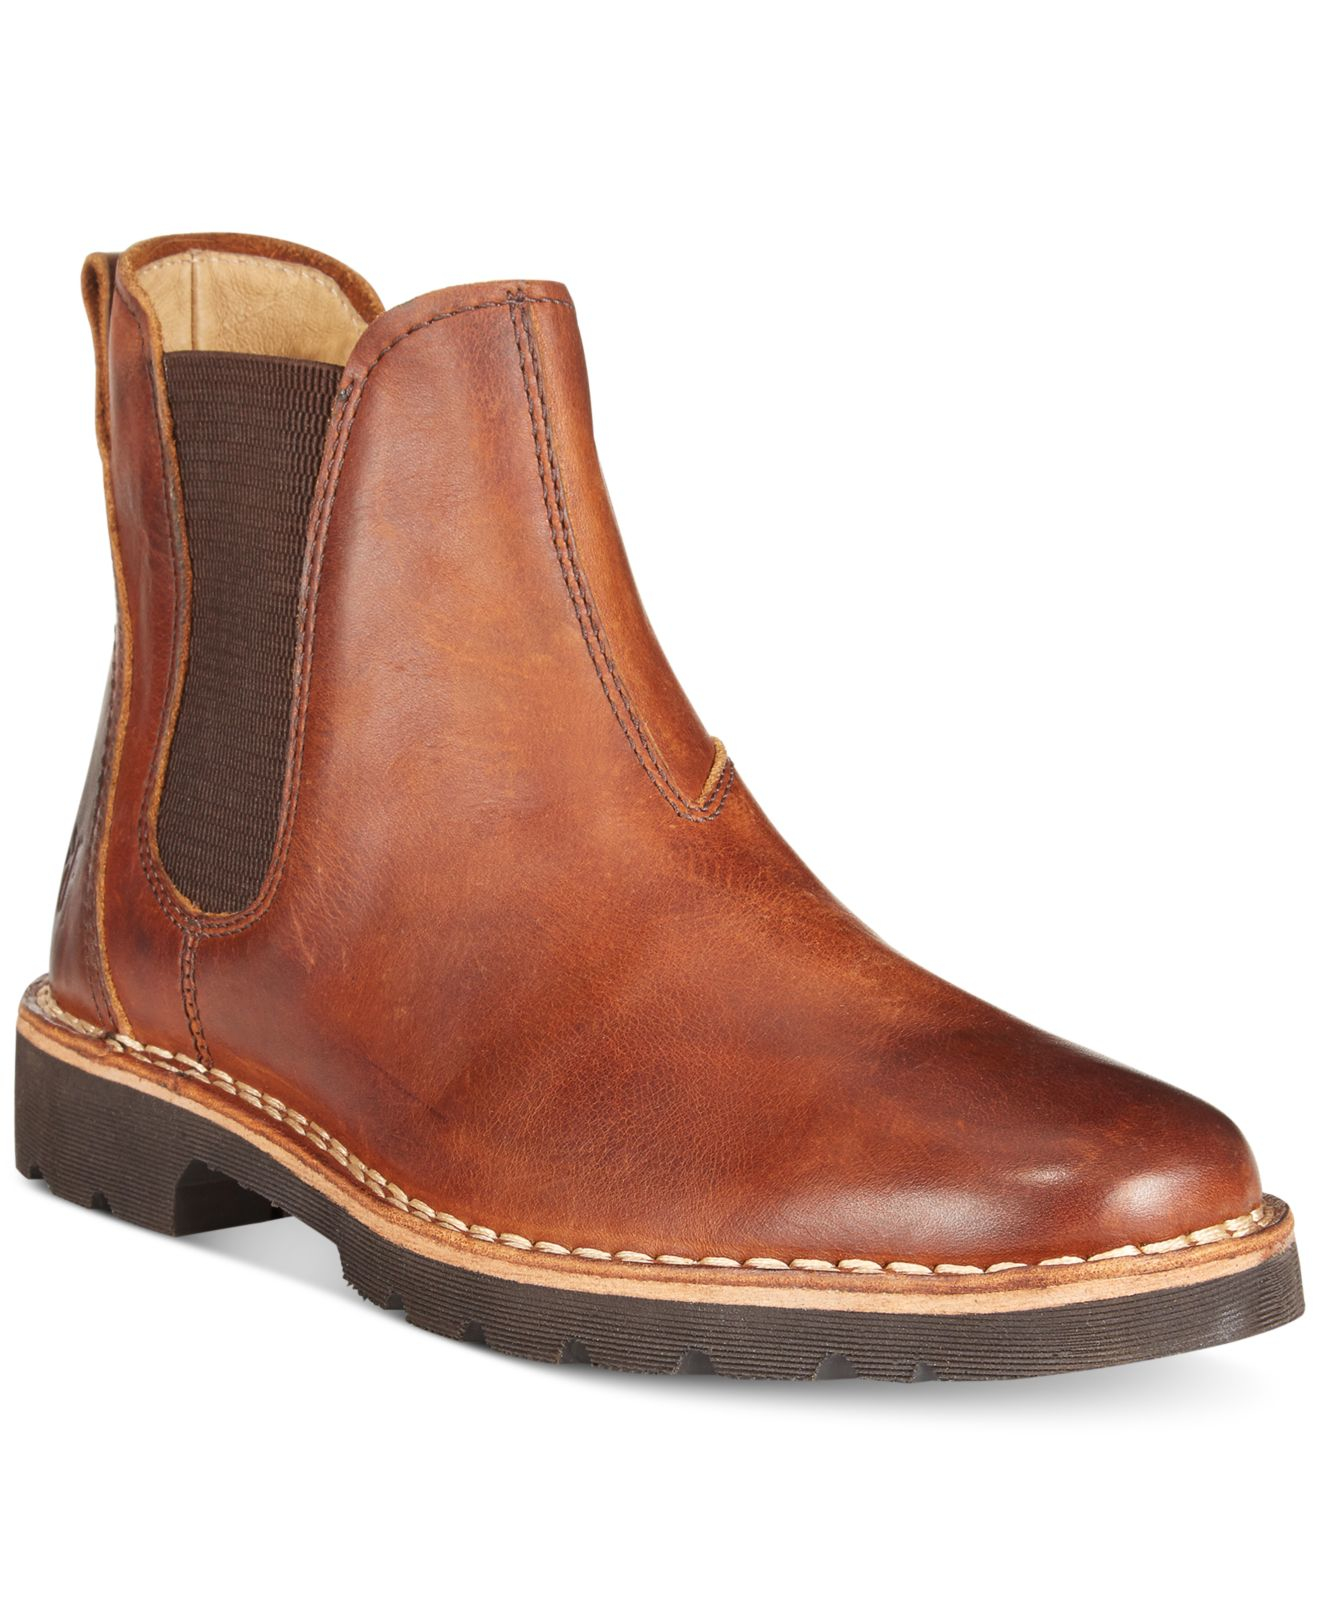 Frye Holden Chelsea Boots in Cognac (Brown) for Men - Lyst